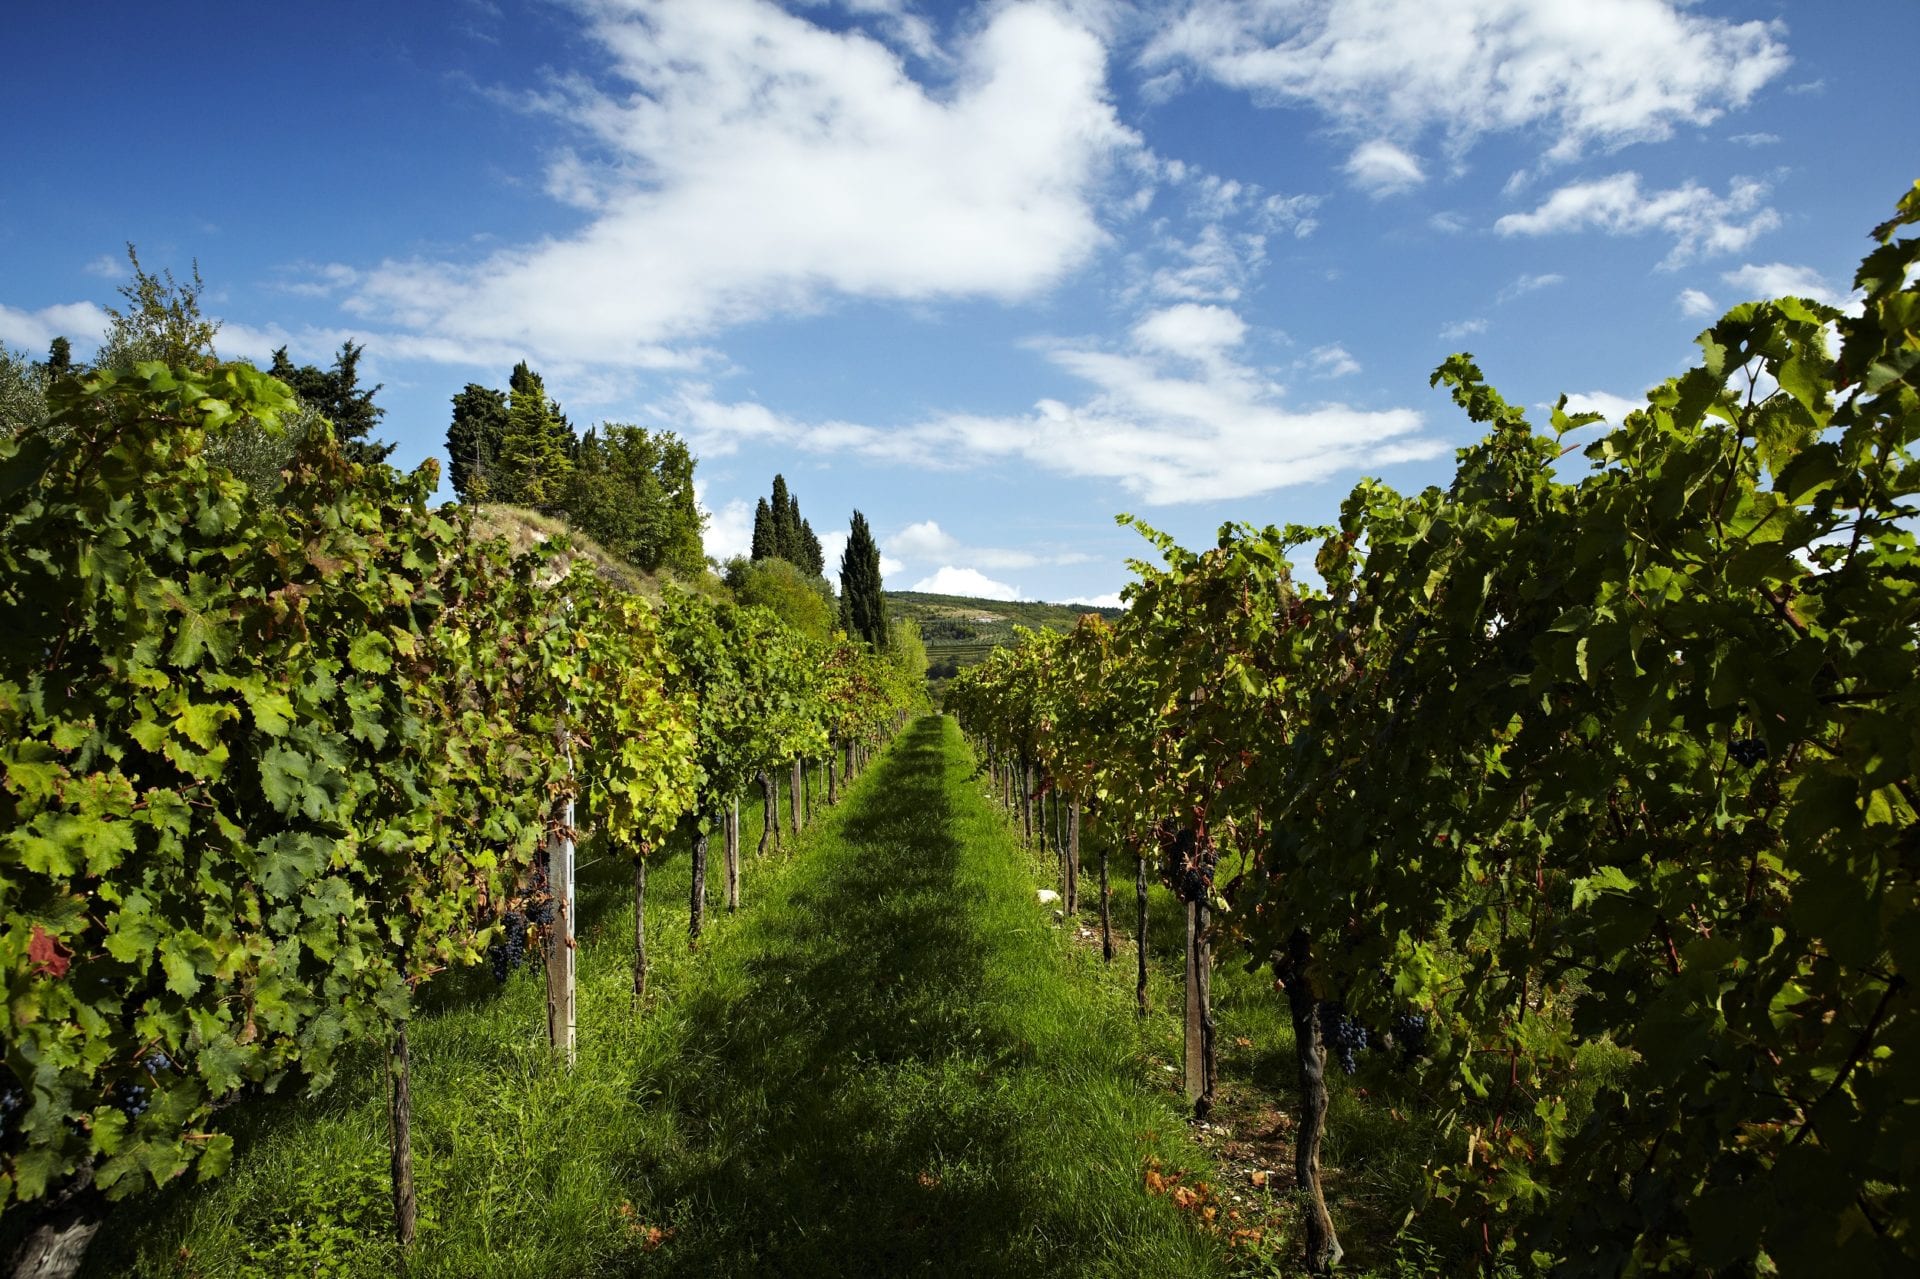 allegrini winery's wine vineyard